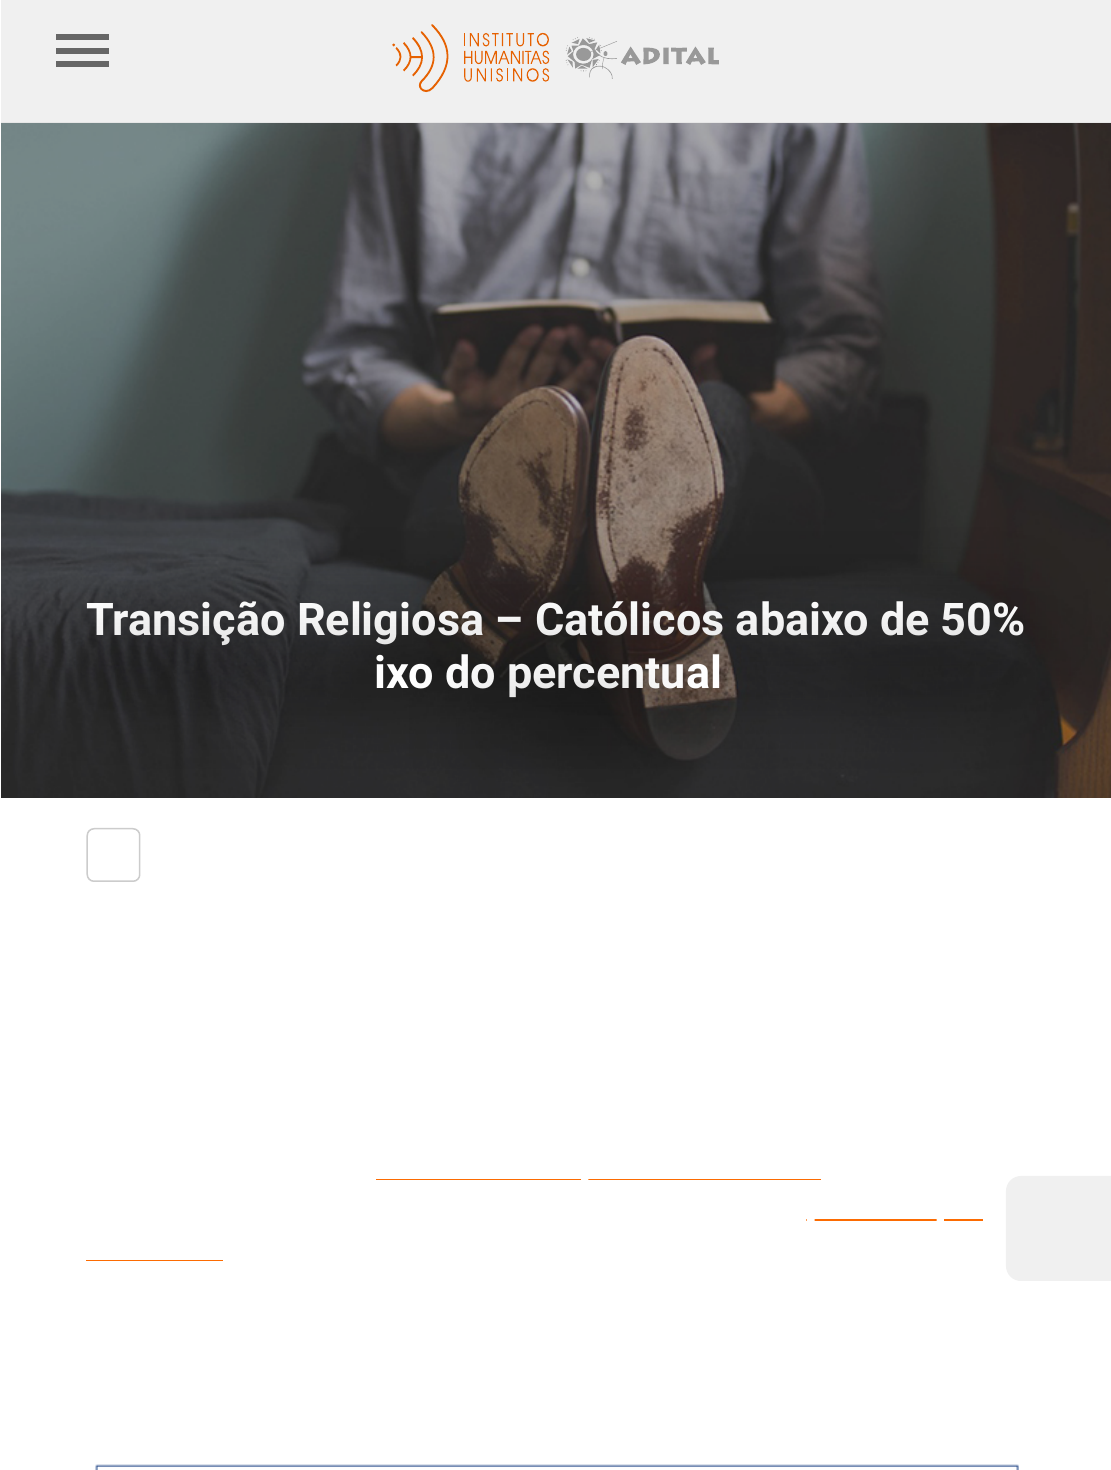 Transição Religiosa – Católicos abaixo de 50% até 2022 e abaixo do